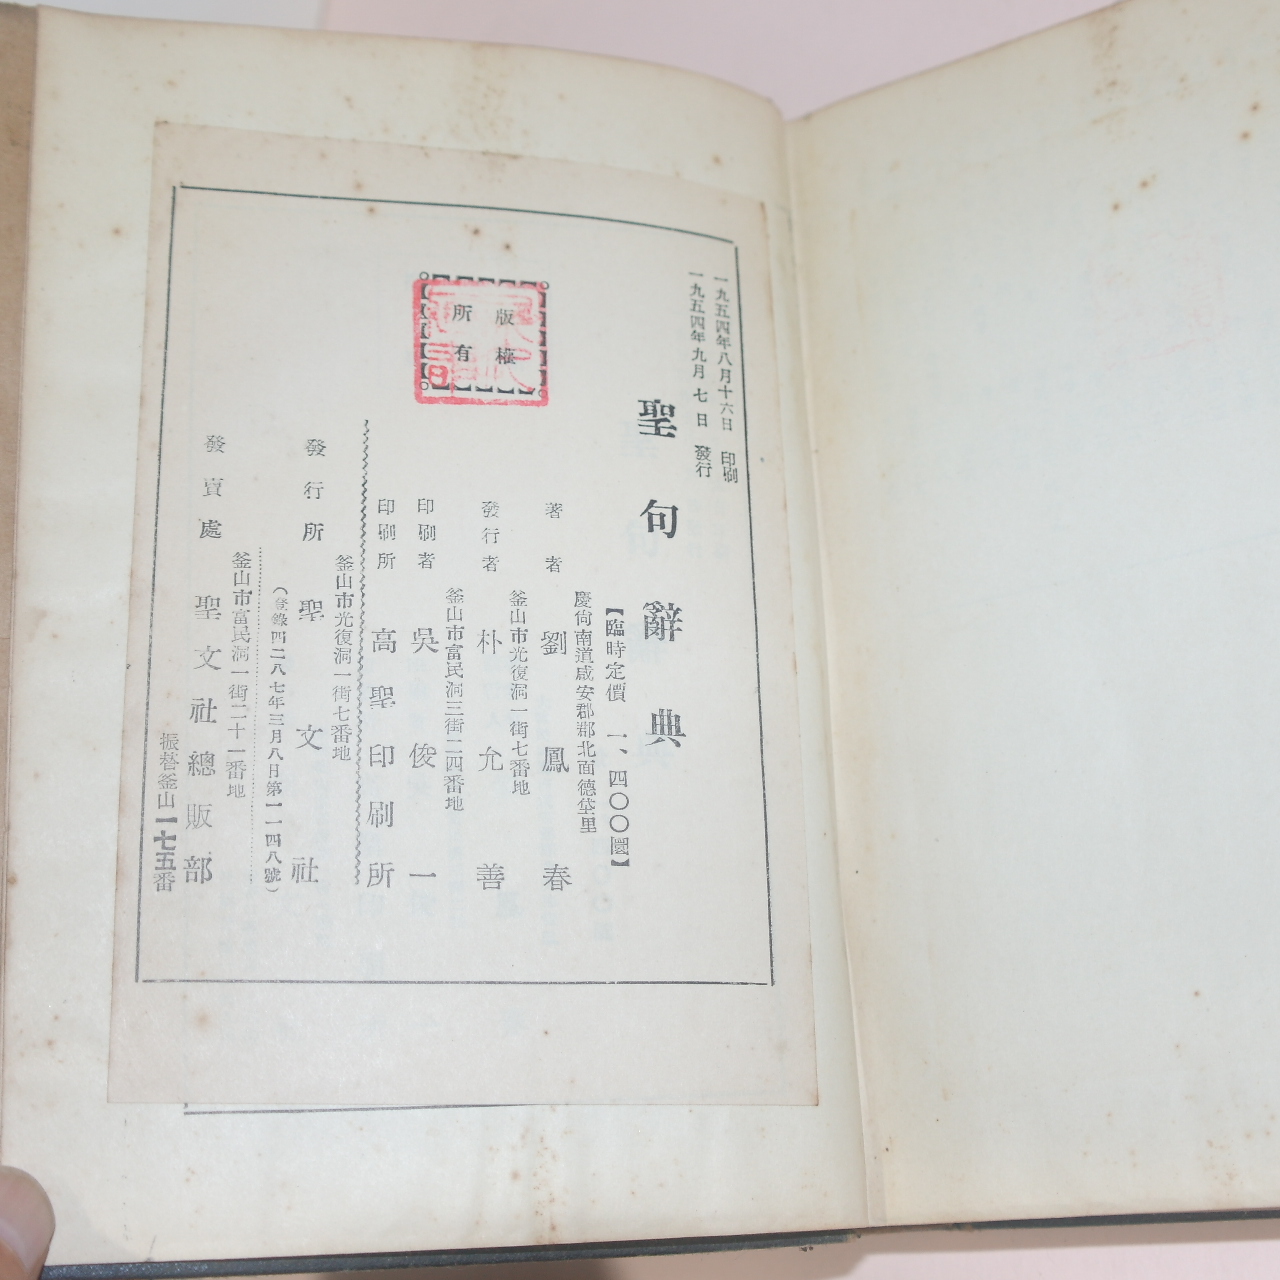 1954년 류봉춘(劉鳳春)목사 성구사전(聖句 辭典)